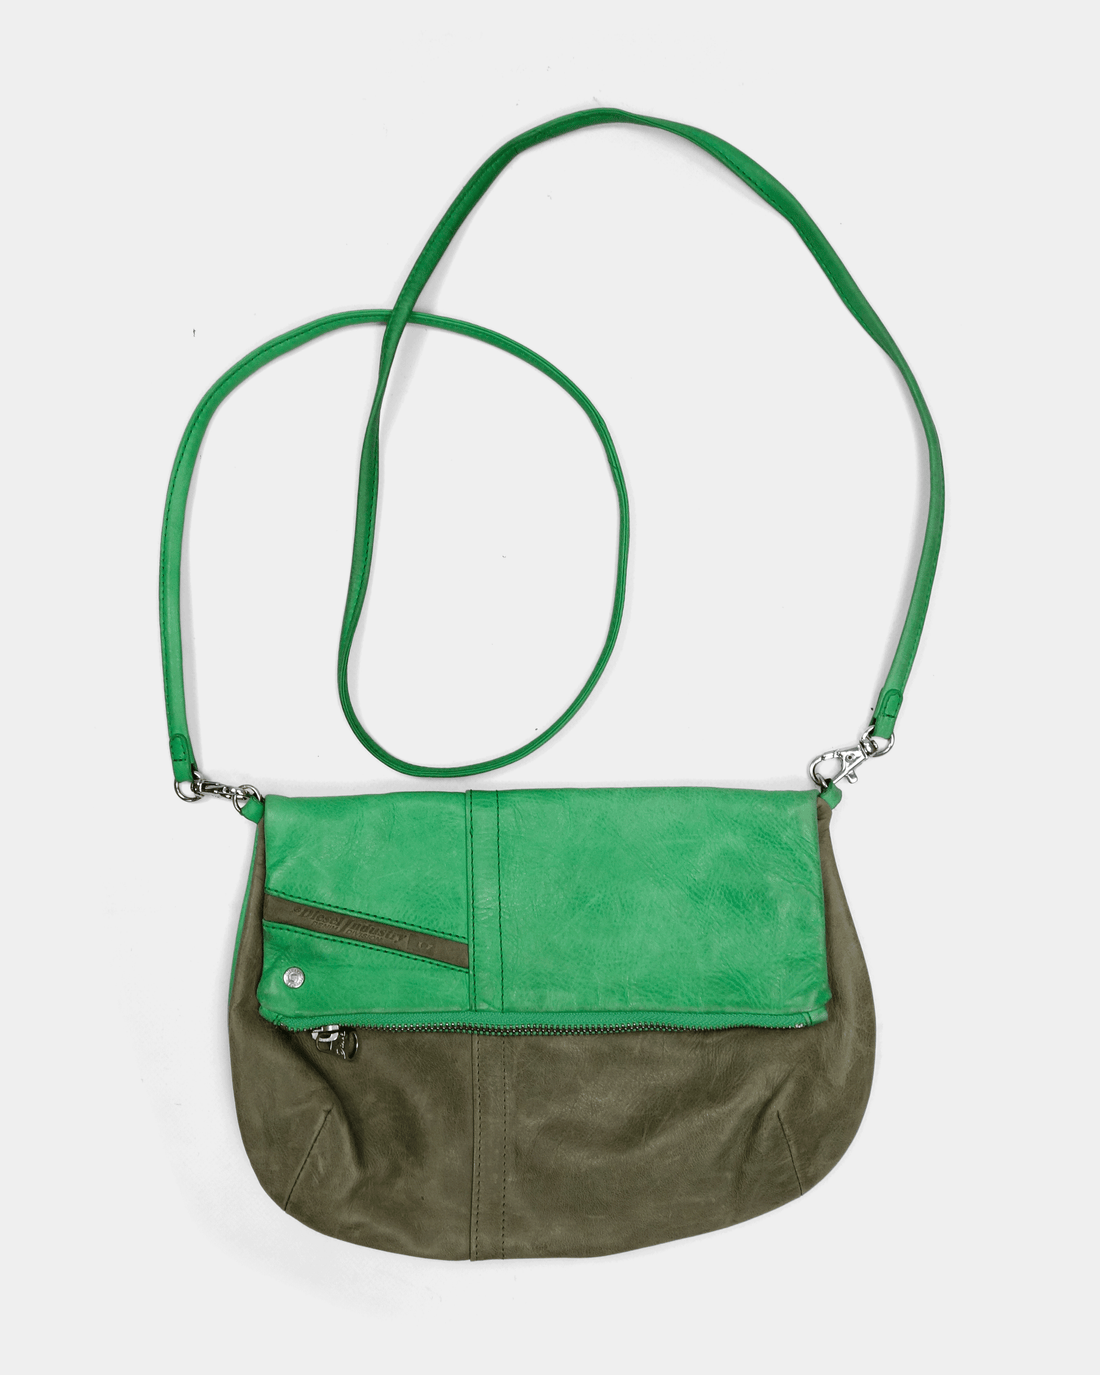 Diesel 2-Tone Green Leather Shoulder Bag 2000's